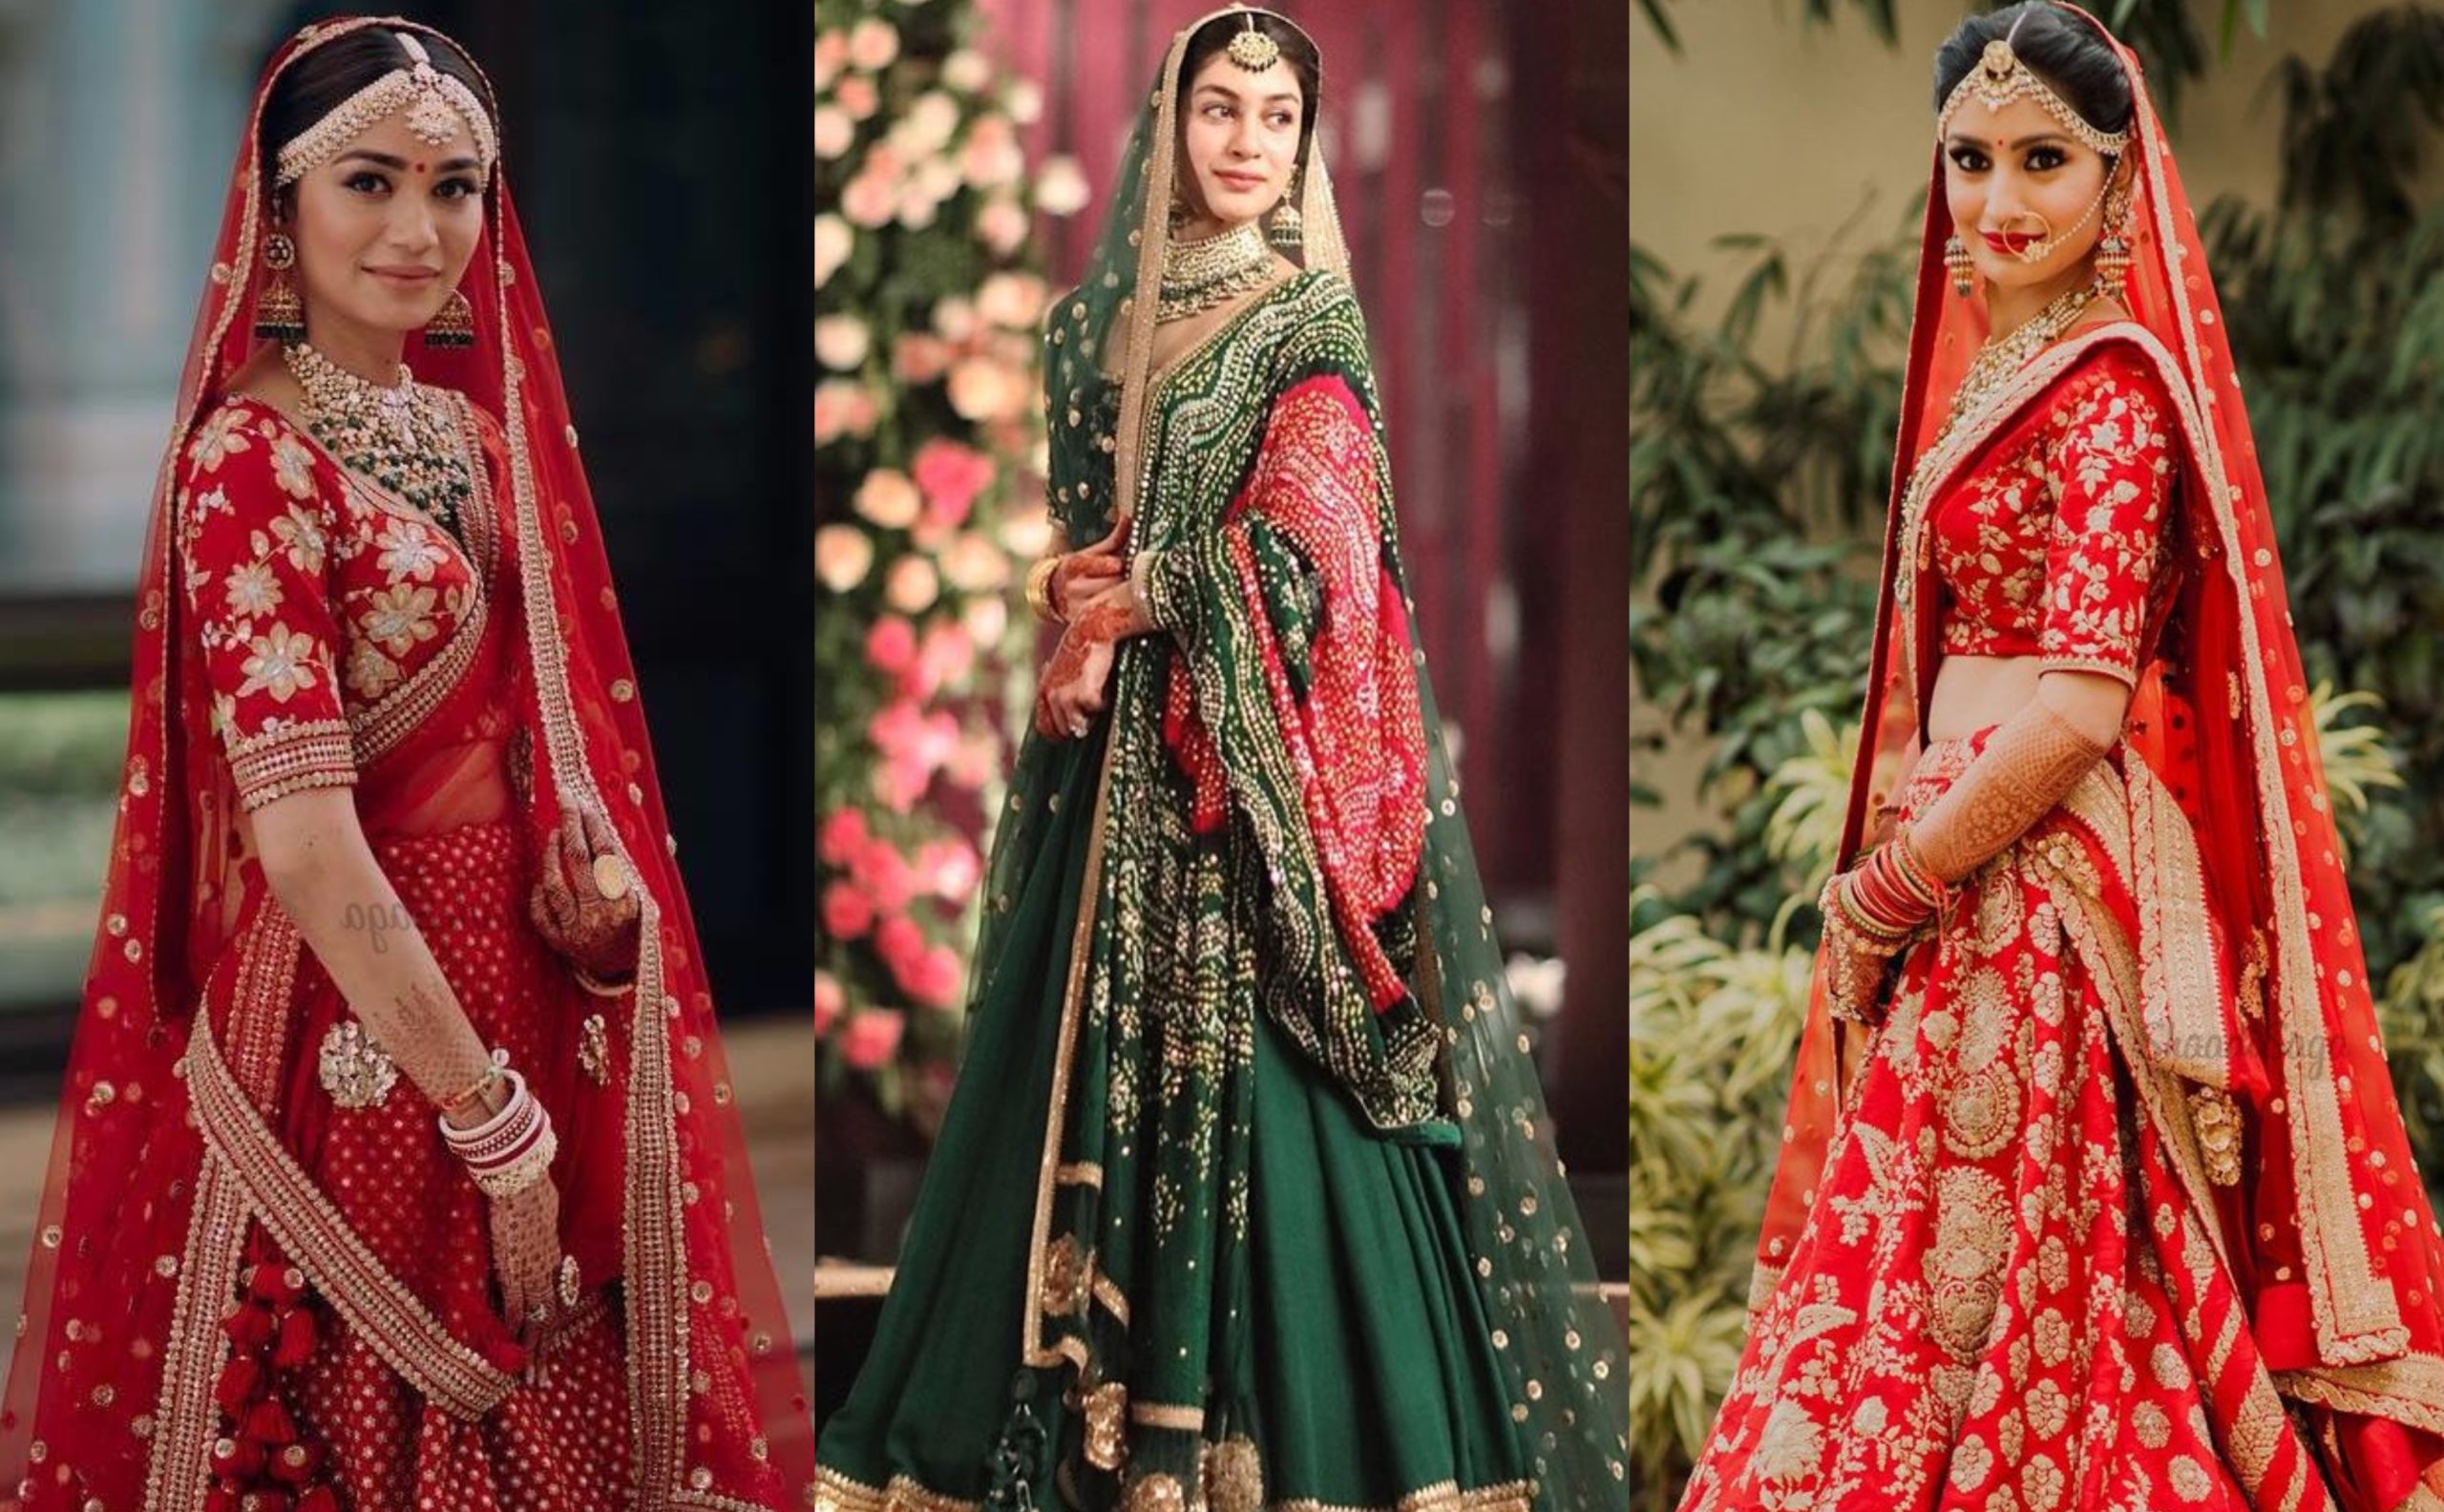 10 latest bridal lehenga designs by Sabyasachi, latest lightweight bridal lehenga choli designs, bridal lehenga latest designs in red colour, शादी के लिए यह लहंगे रहेंगे बेहतर